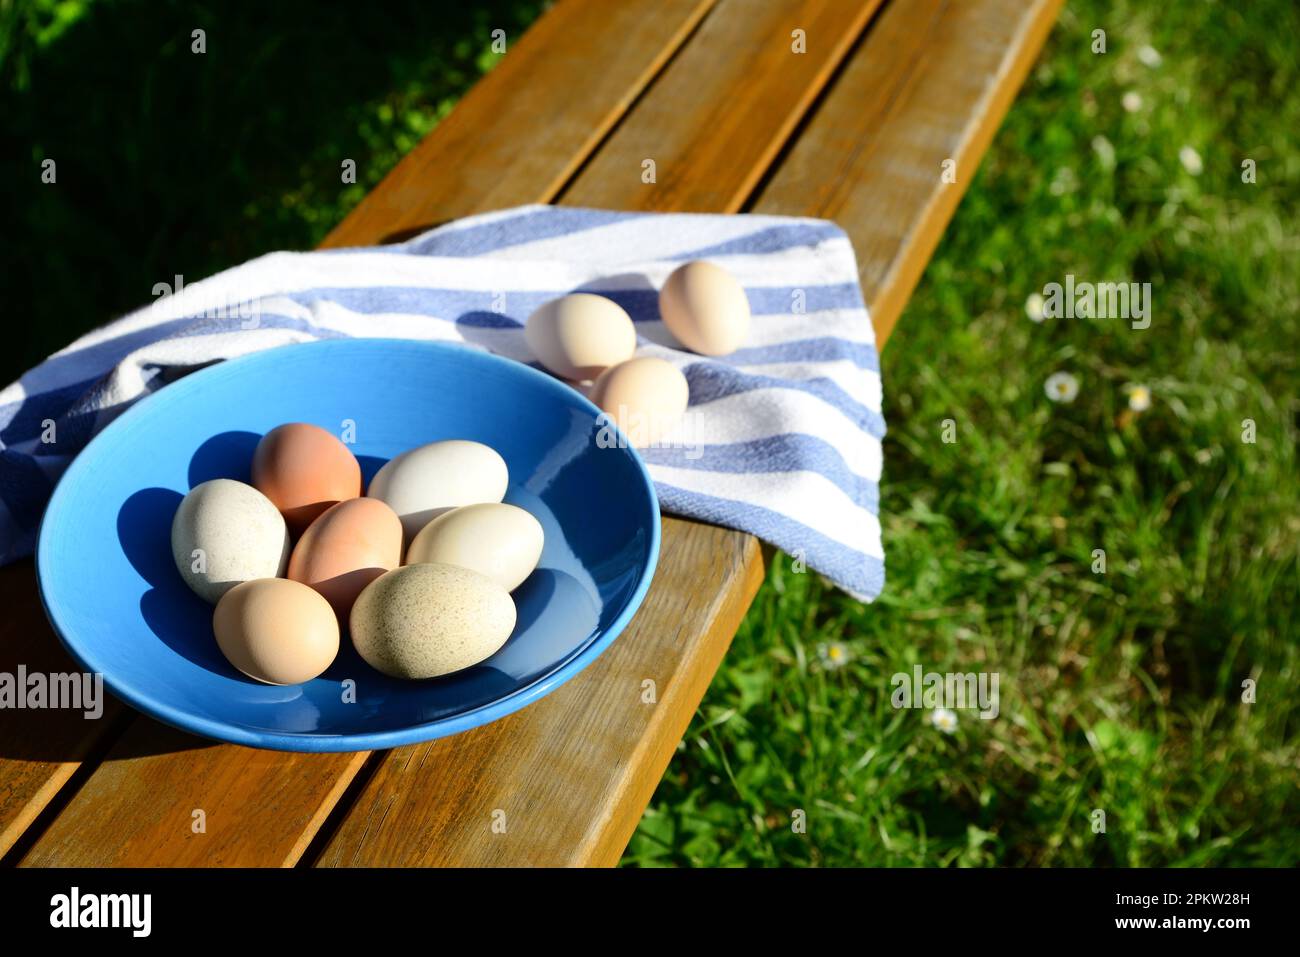 Teller und Serviette mit verschiedenen Eiern auf einem Holztisch im Freien Stockfoto